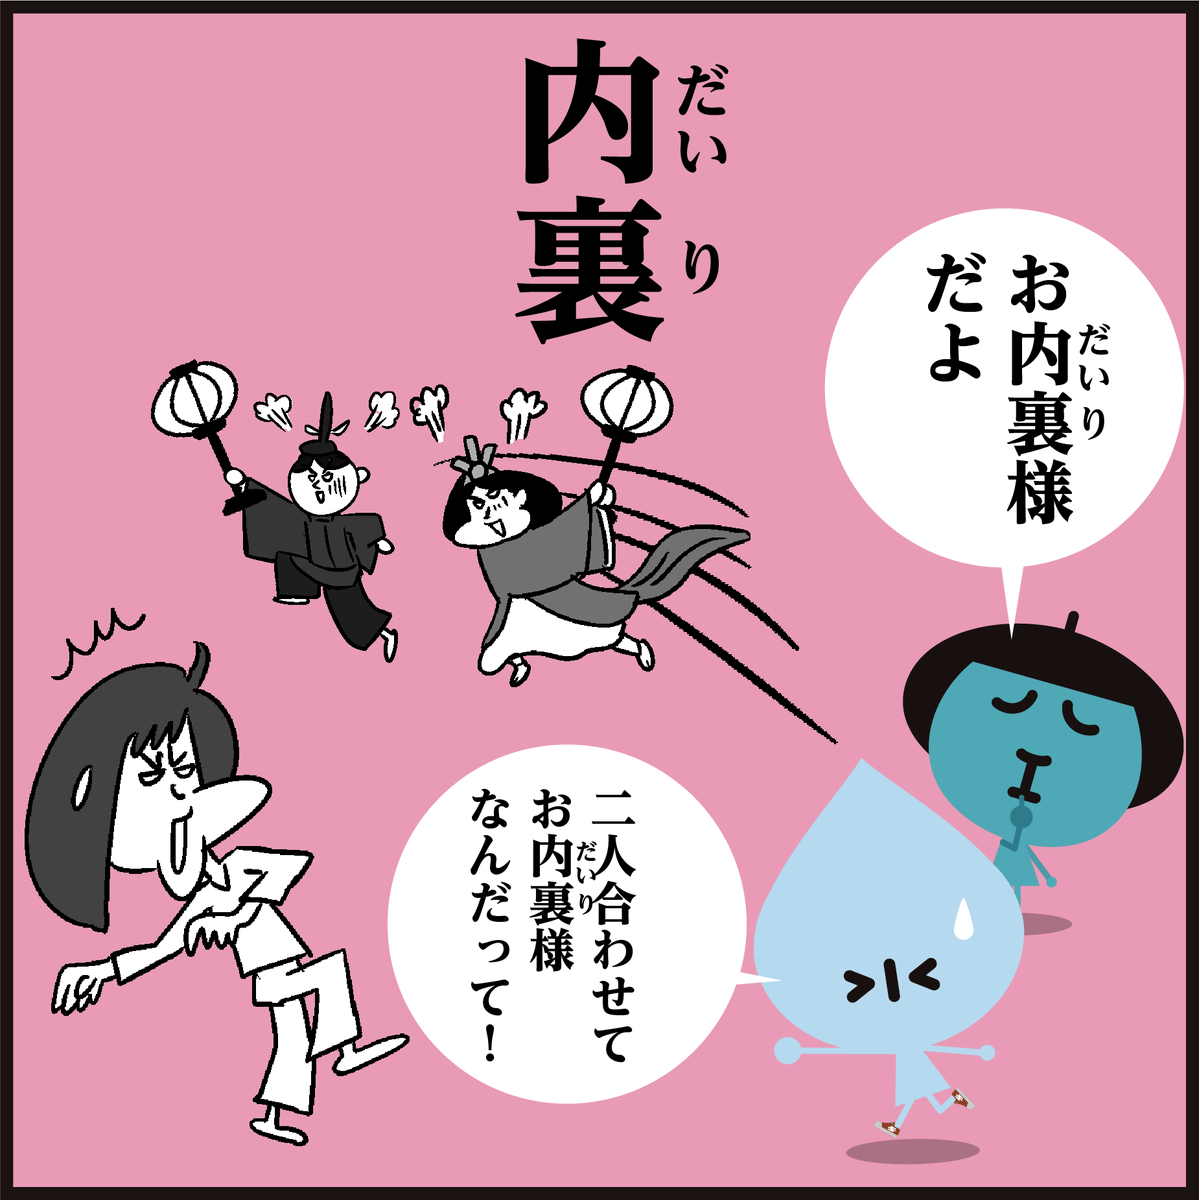 🎎ひな祭り🎎<4コマ漫画>
漢字「雪洞」「内裏」読める?
#イラスト #4コマ漫画 #雛人形 